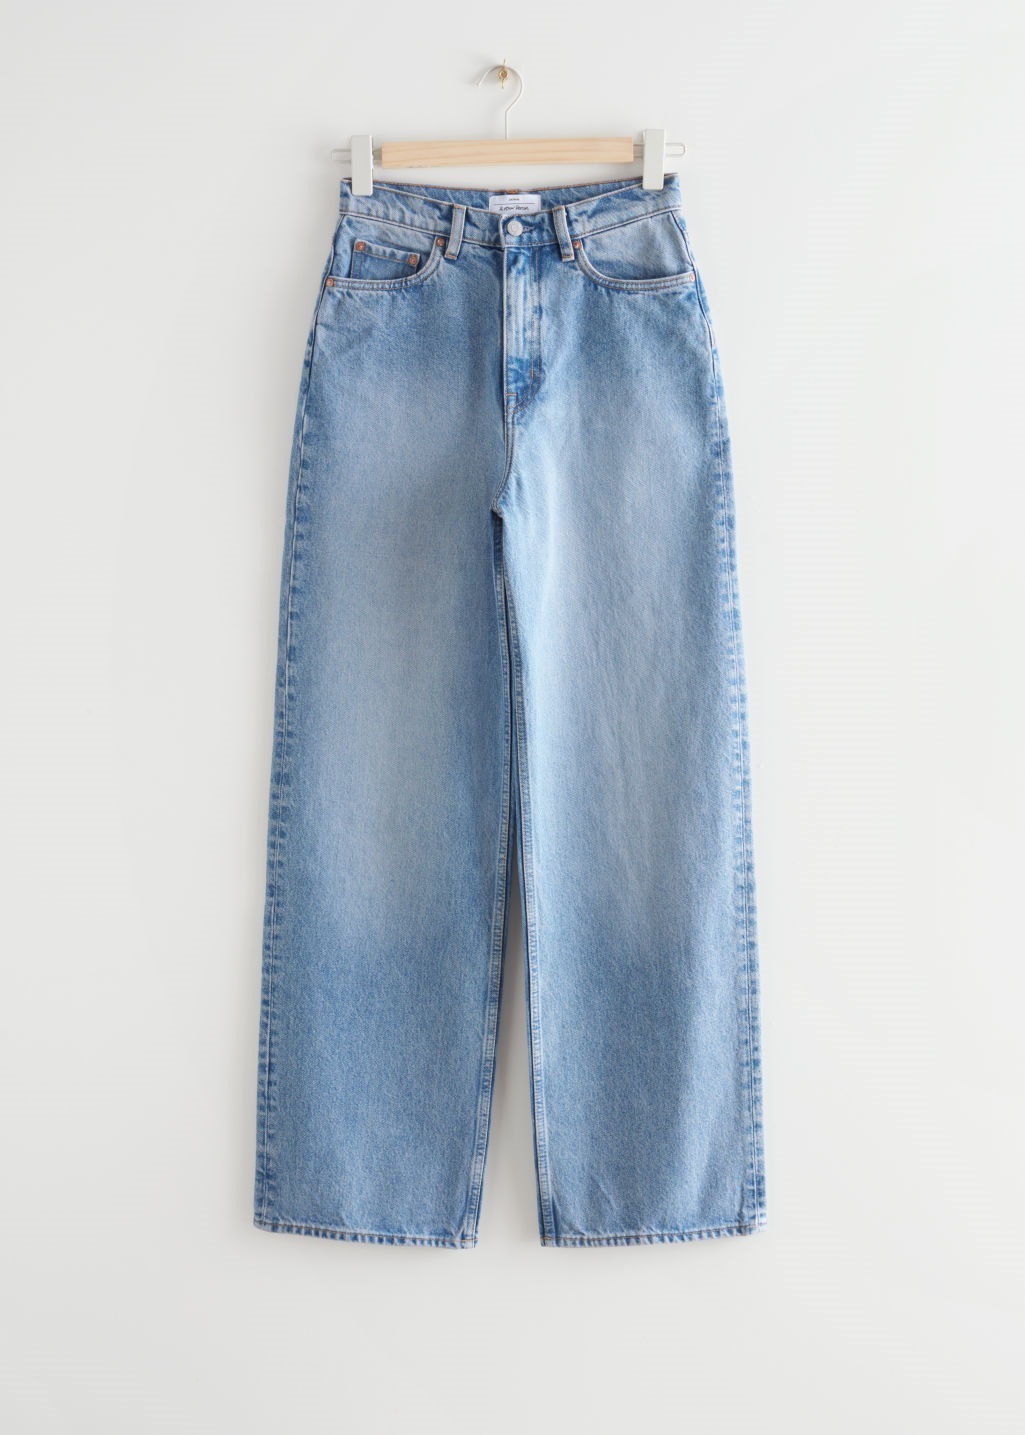 Jeans de pernera ancha de & Other Stories (79 euros).